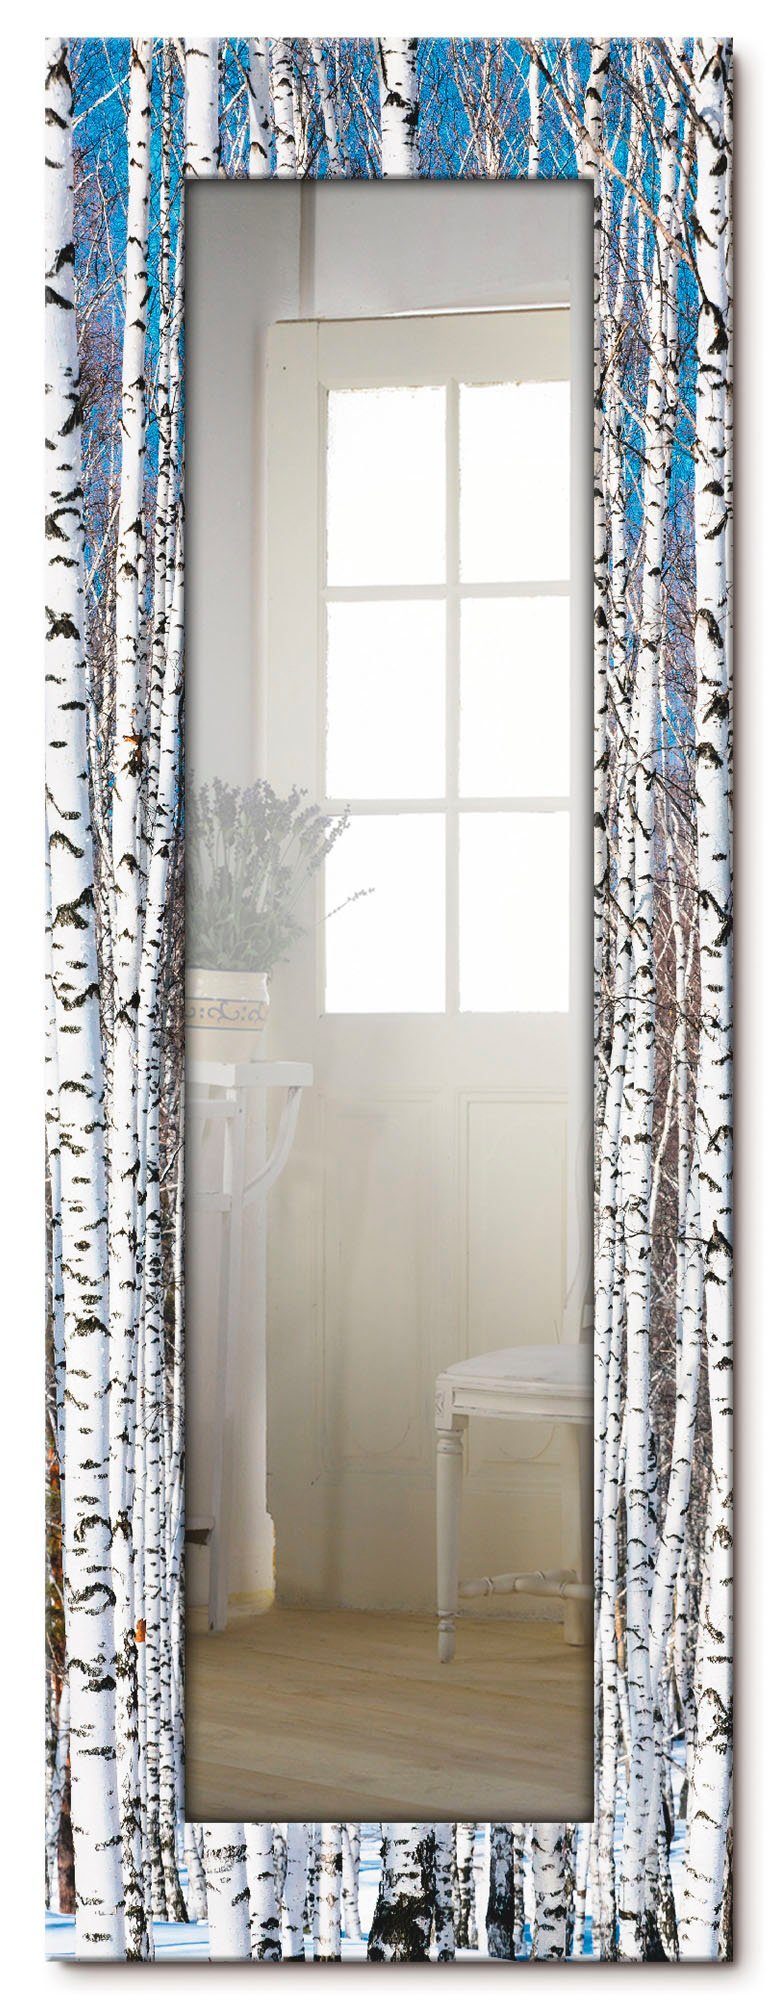 Artland Sierspiegel Winter berkenbos winter sereniteit ingelijste spiegel voor het hele lichaam met motiefrand, geschikt voor kleine, smalle hal, halspiegel, mirror spiegel omrand